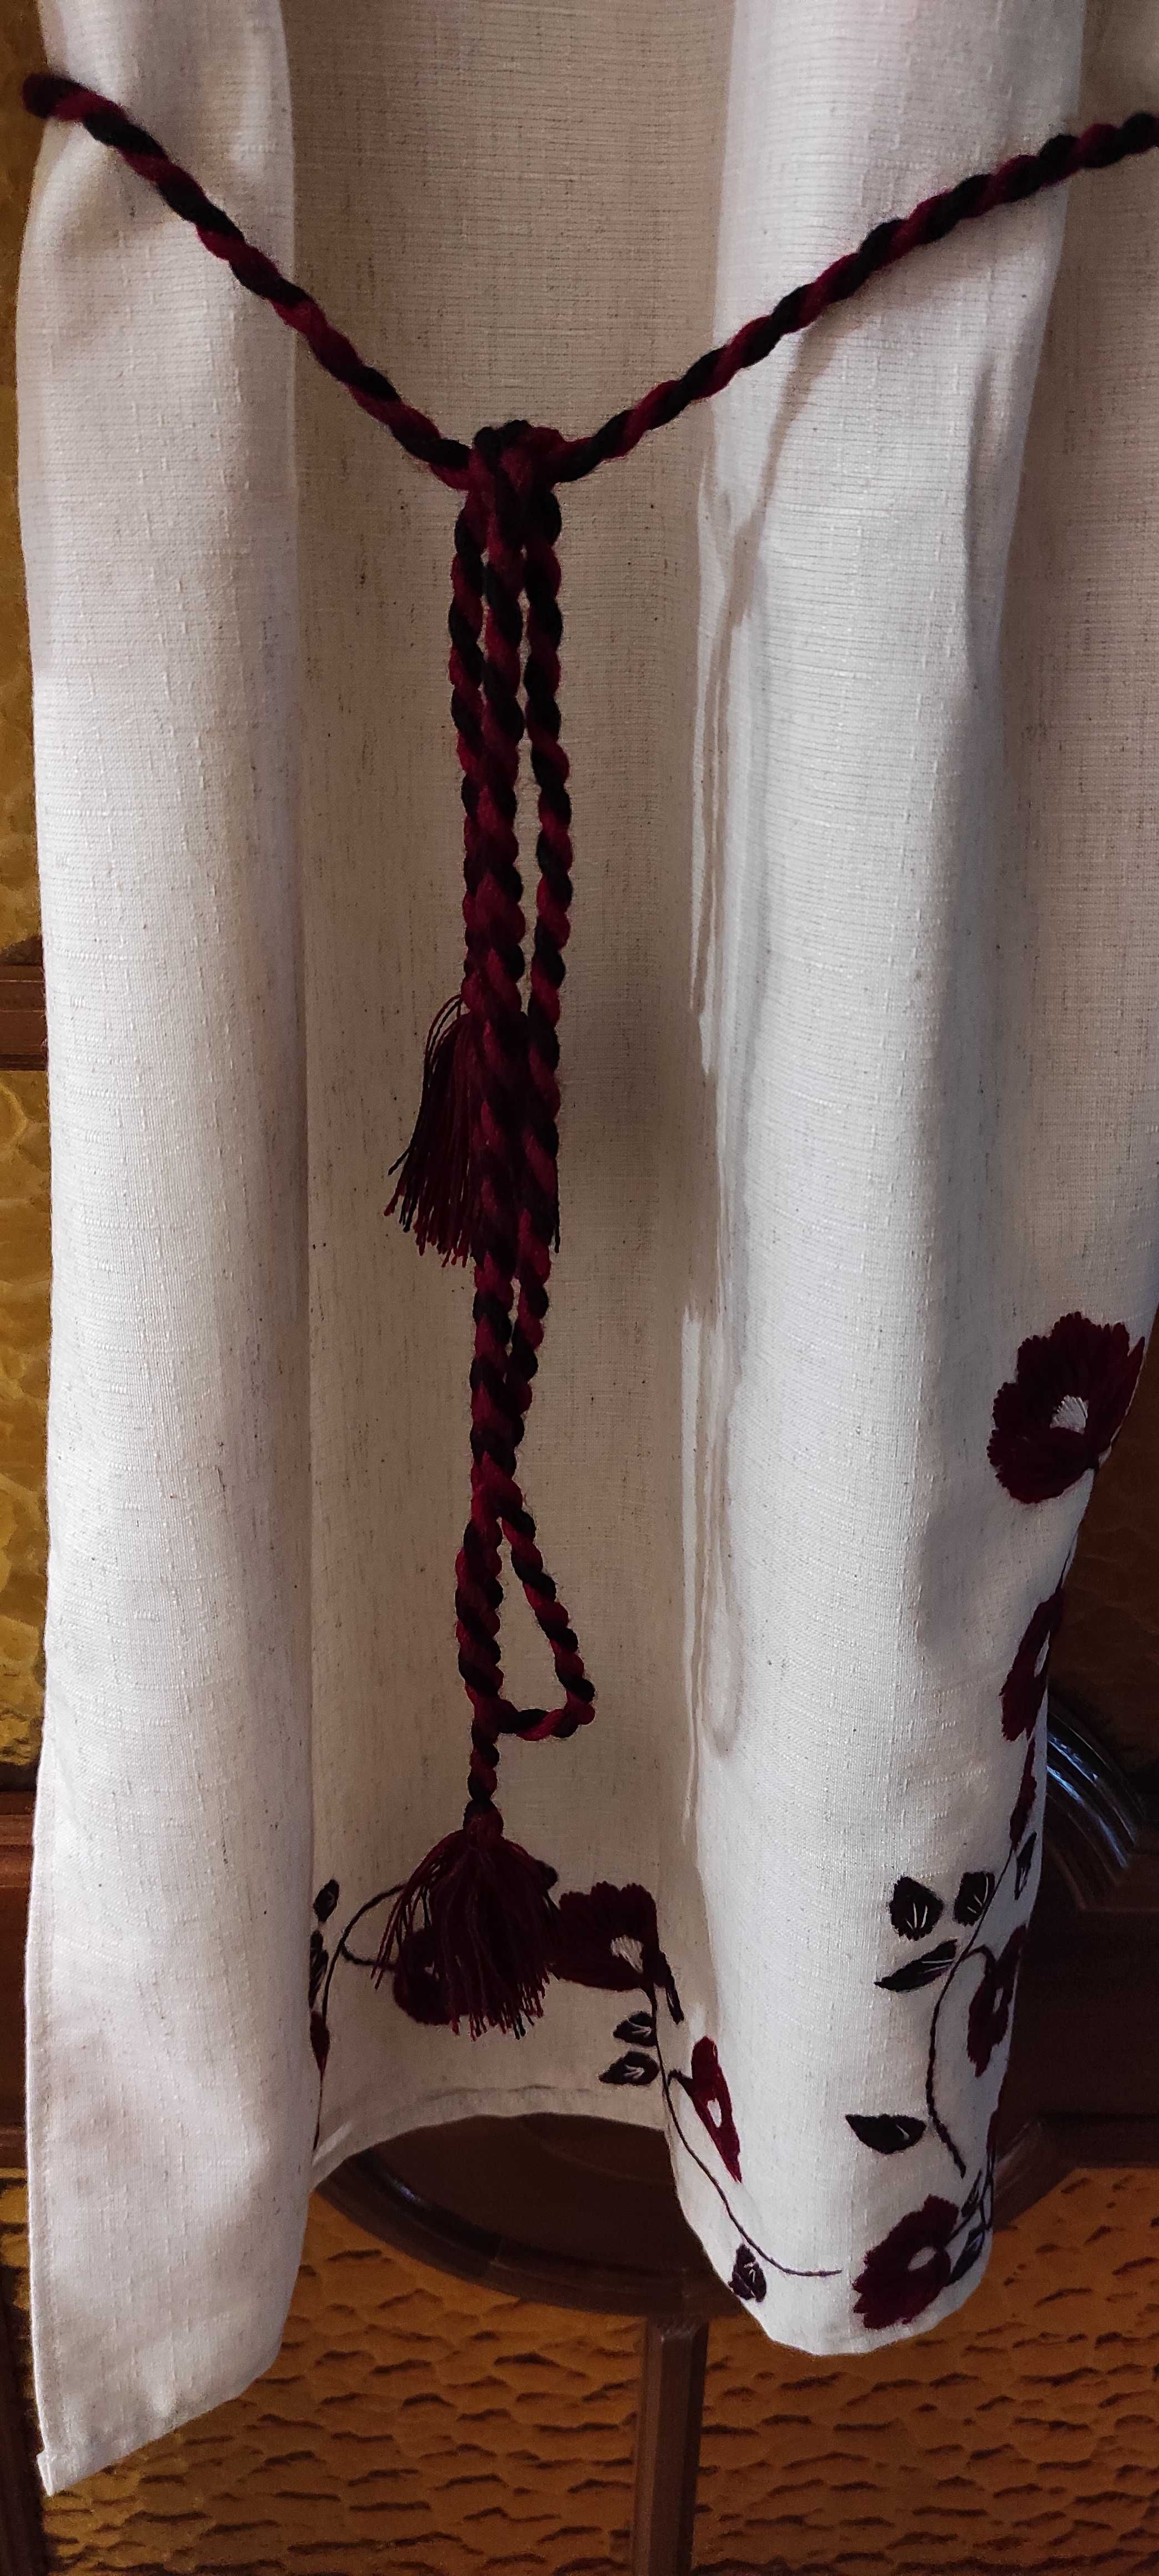 Сукня вишиванка ручна робота (Льон) З поясом